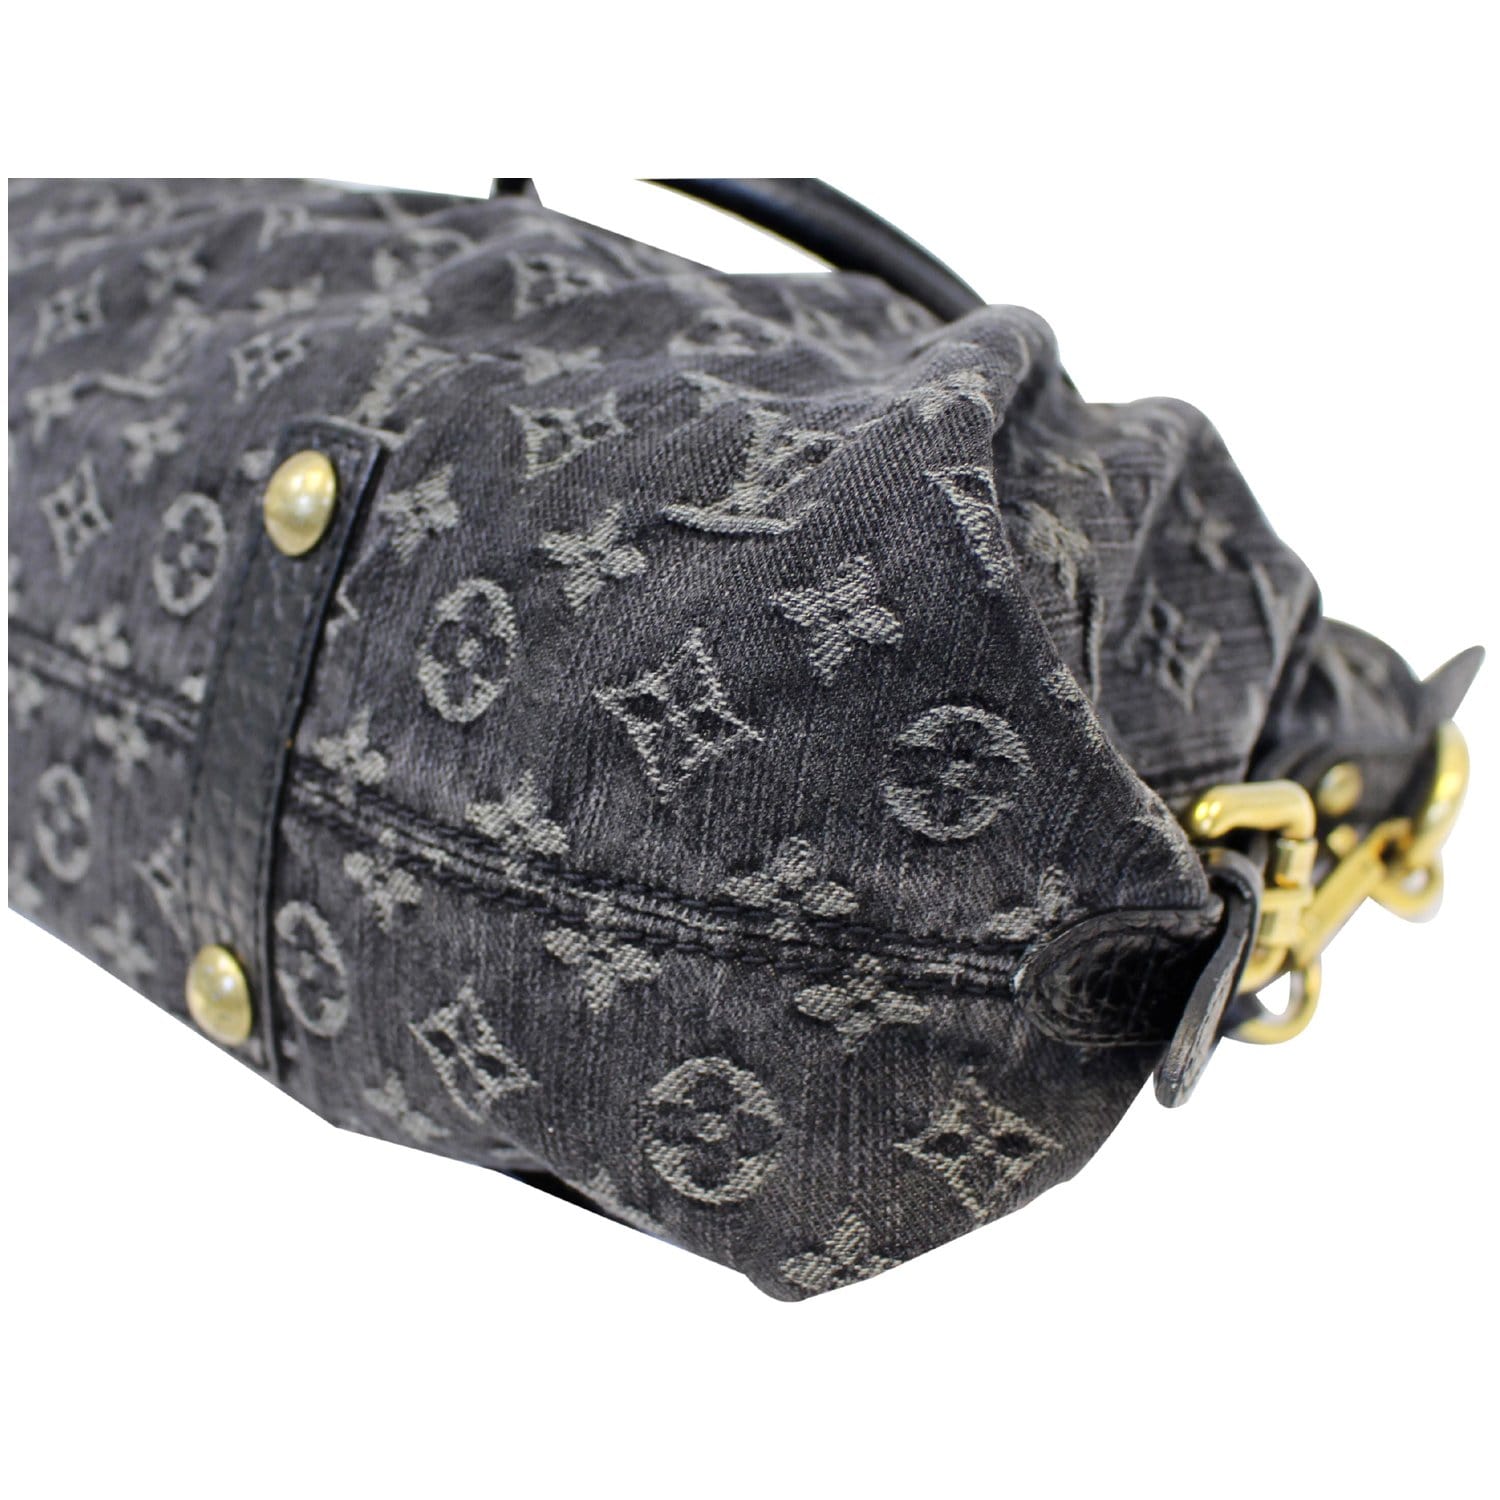 Louis Vuitton Diaper Bag Replica